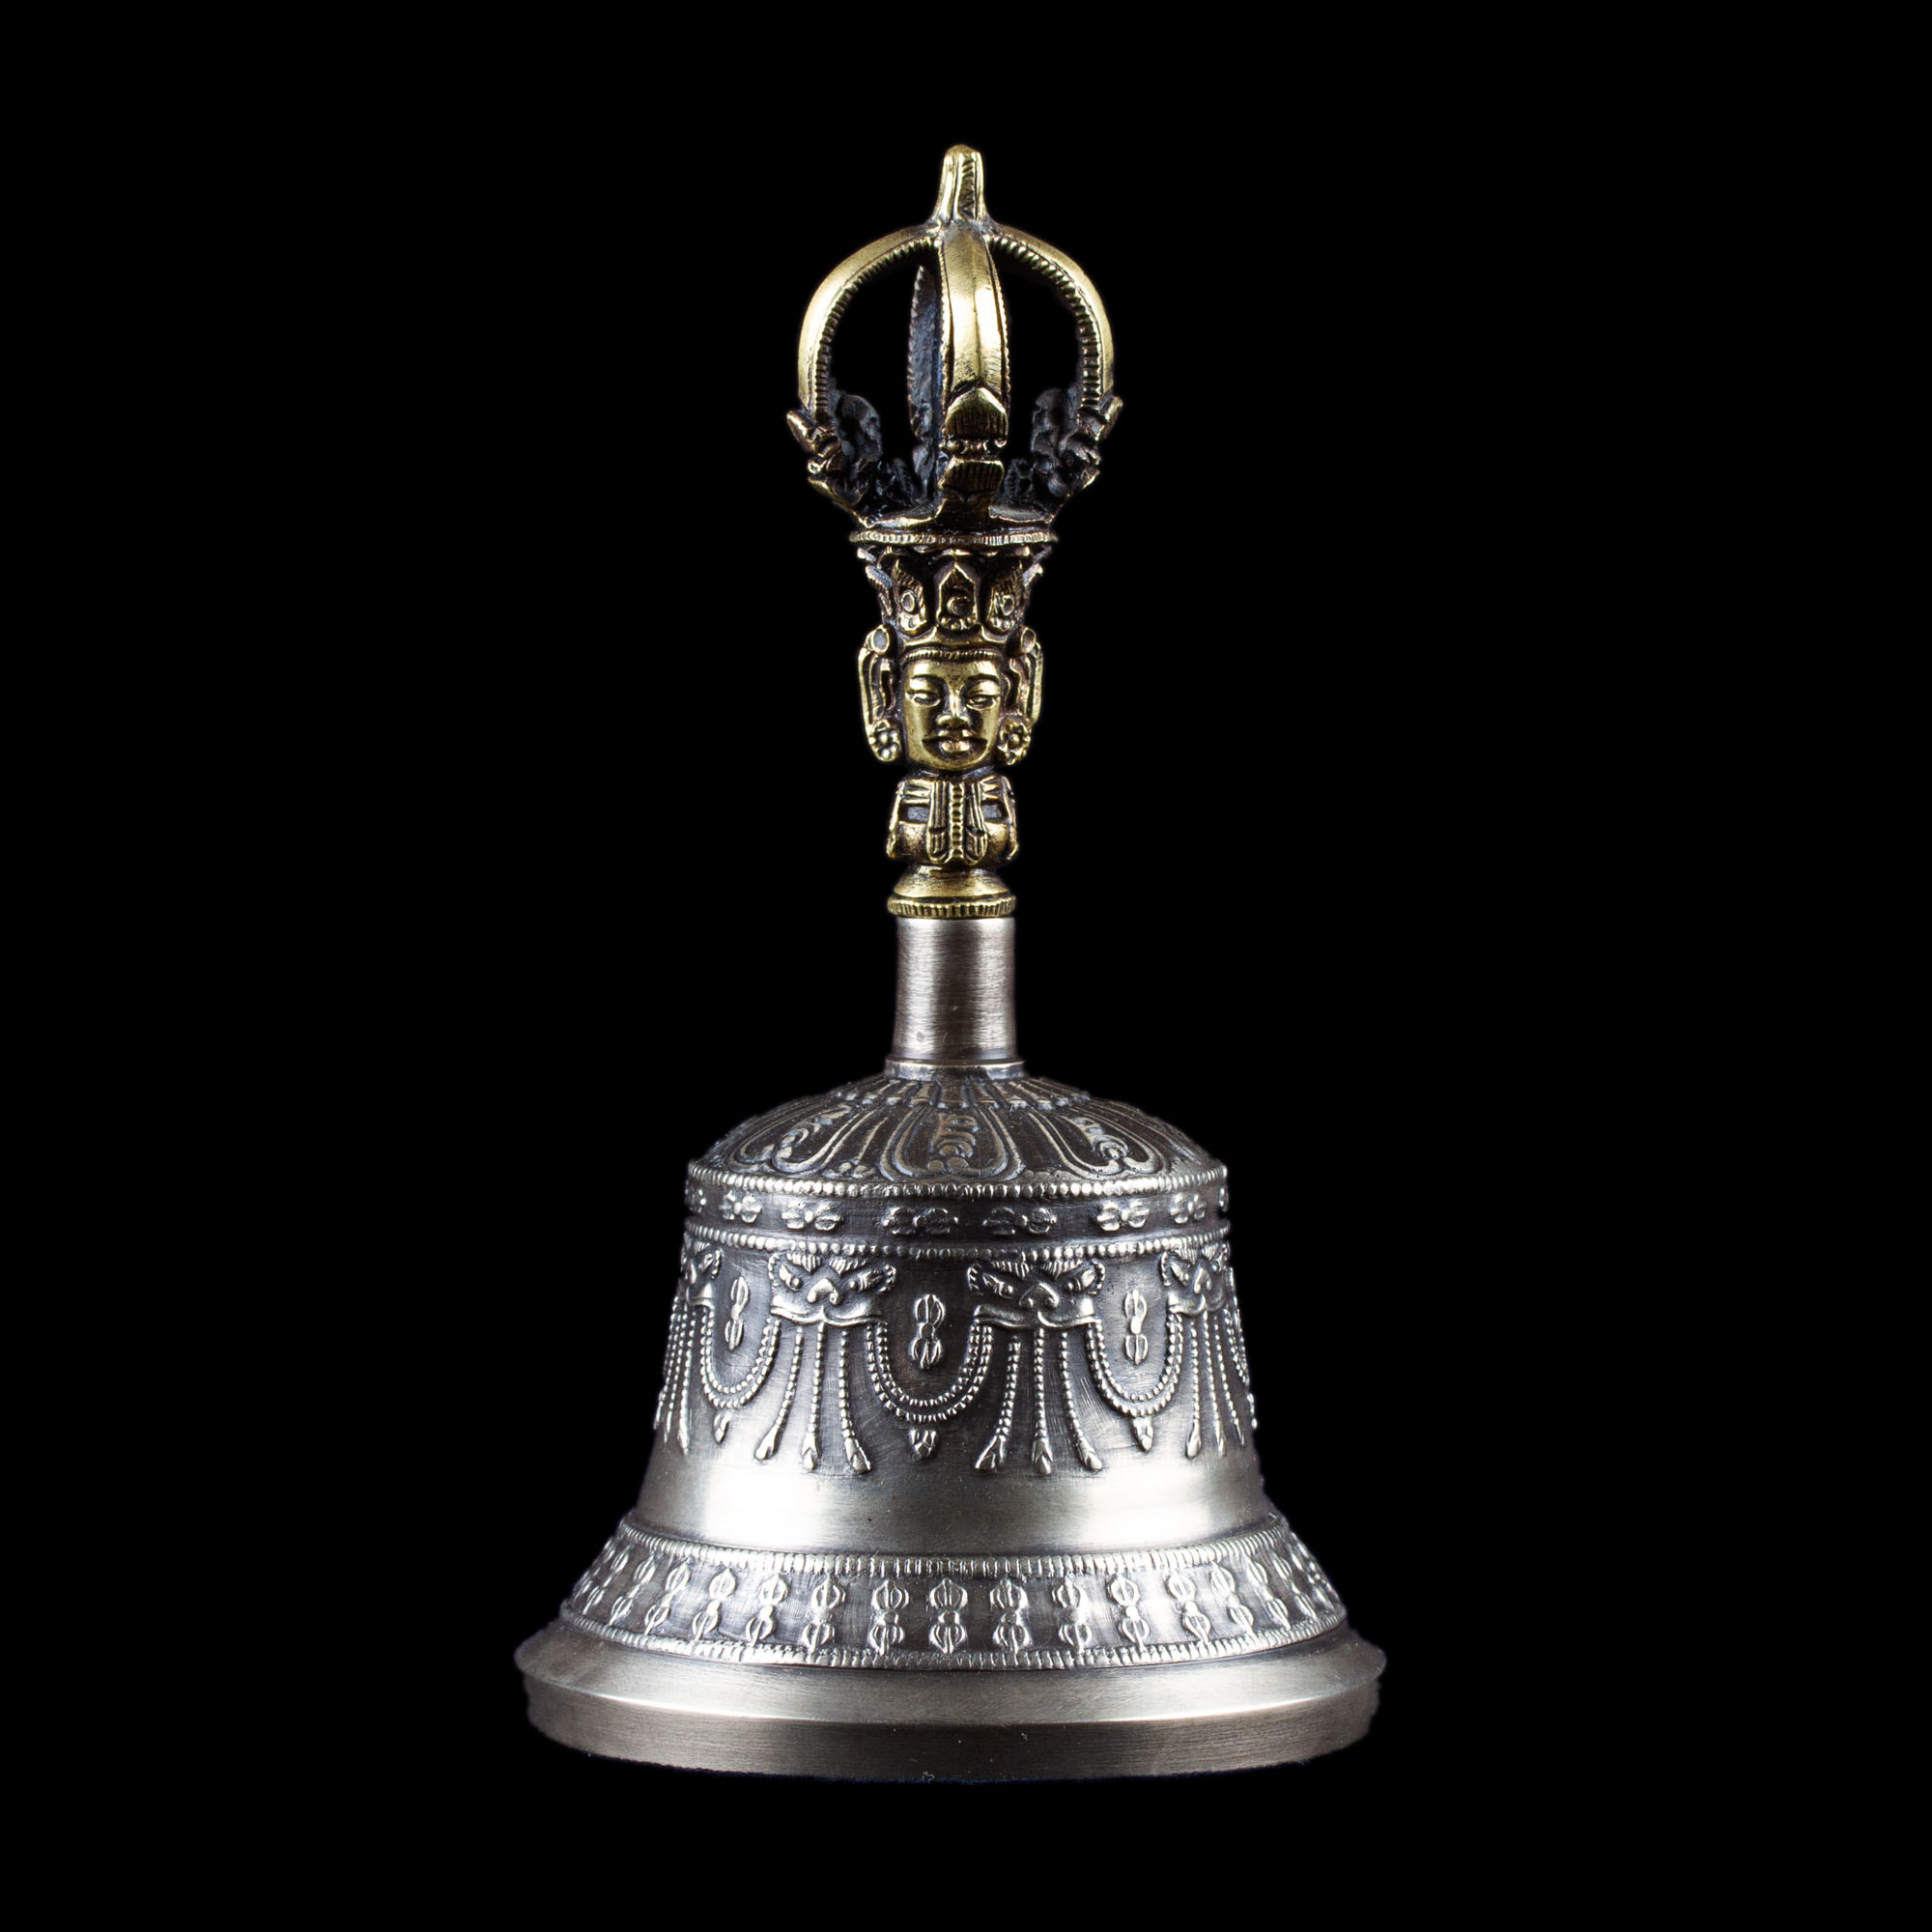 Колокольчик с ваджрой, 15 см, Оригинальный колокольчик из Дехрадуна (Индия), серебристый, патинированный